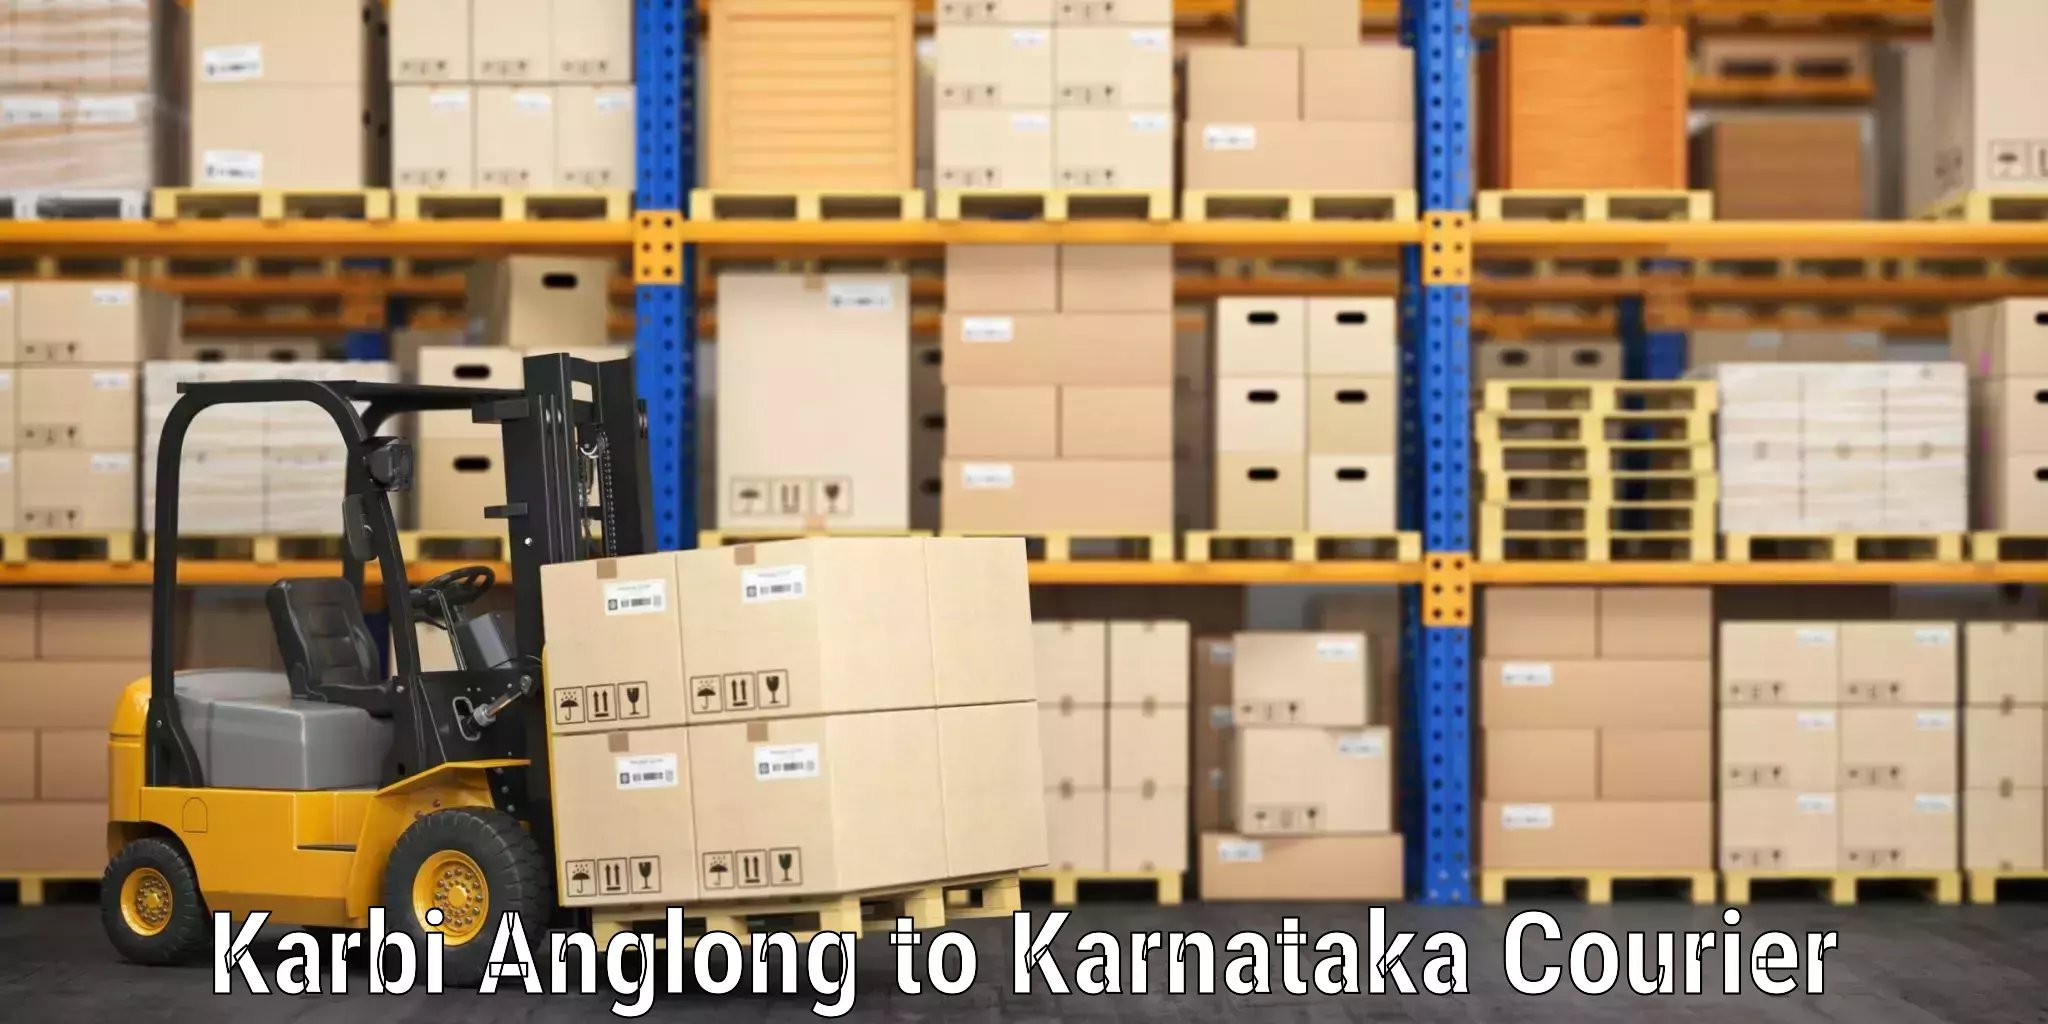 Luggage transport consultancy Karbi Anglong to Karnataka